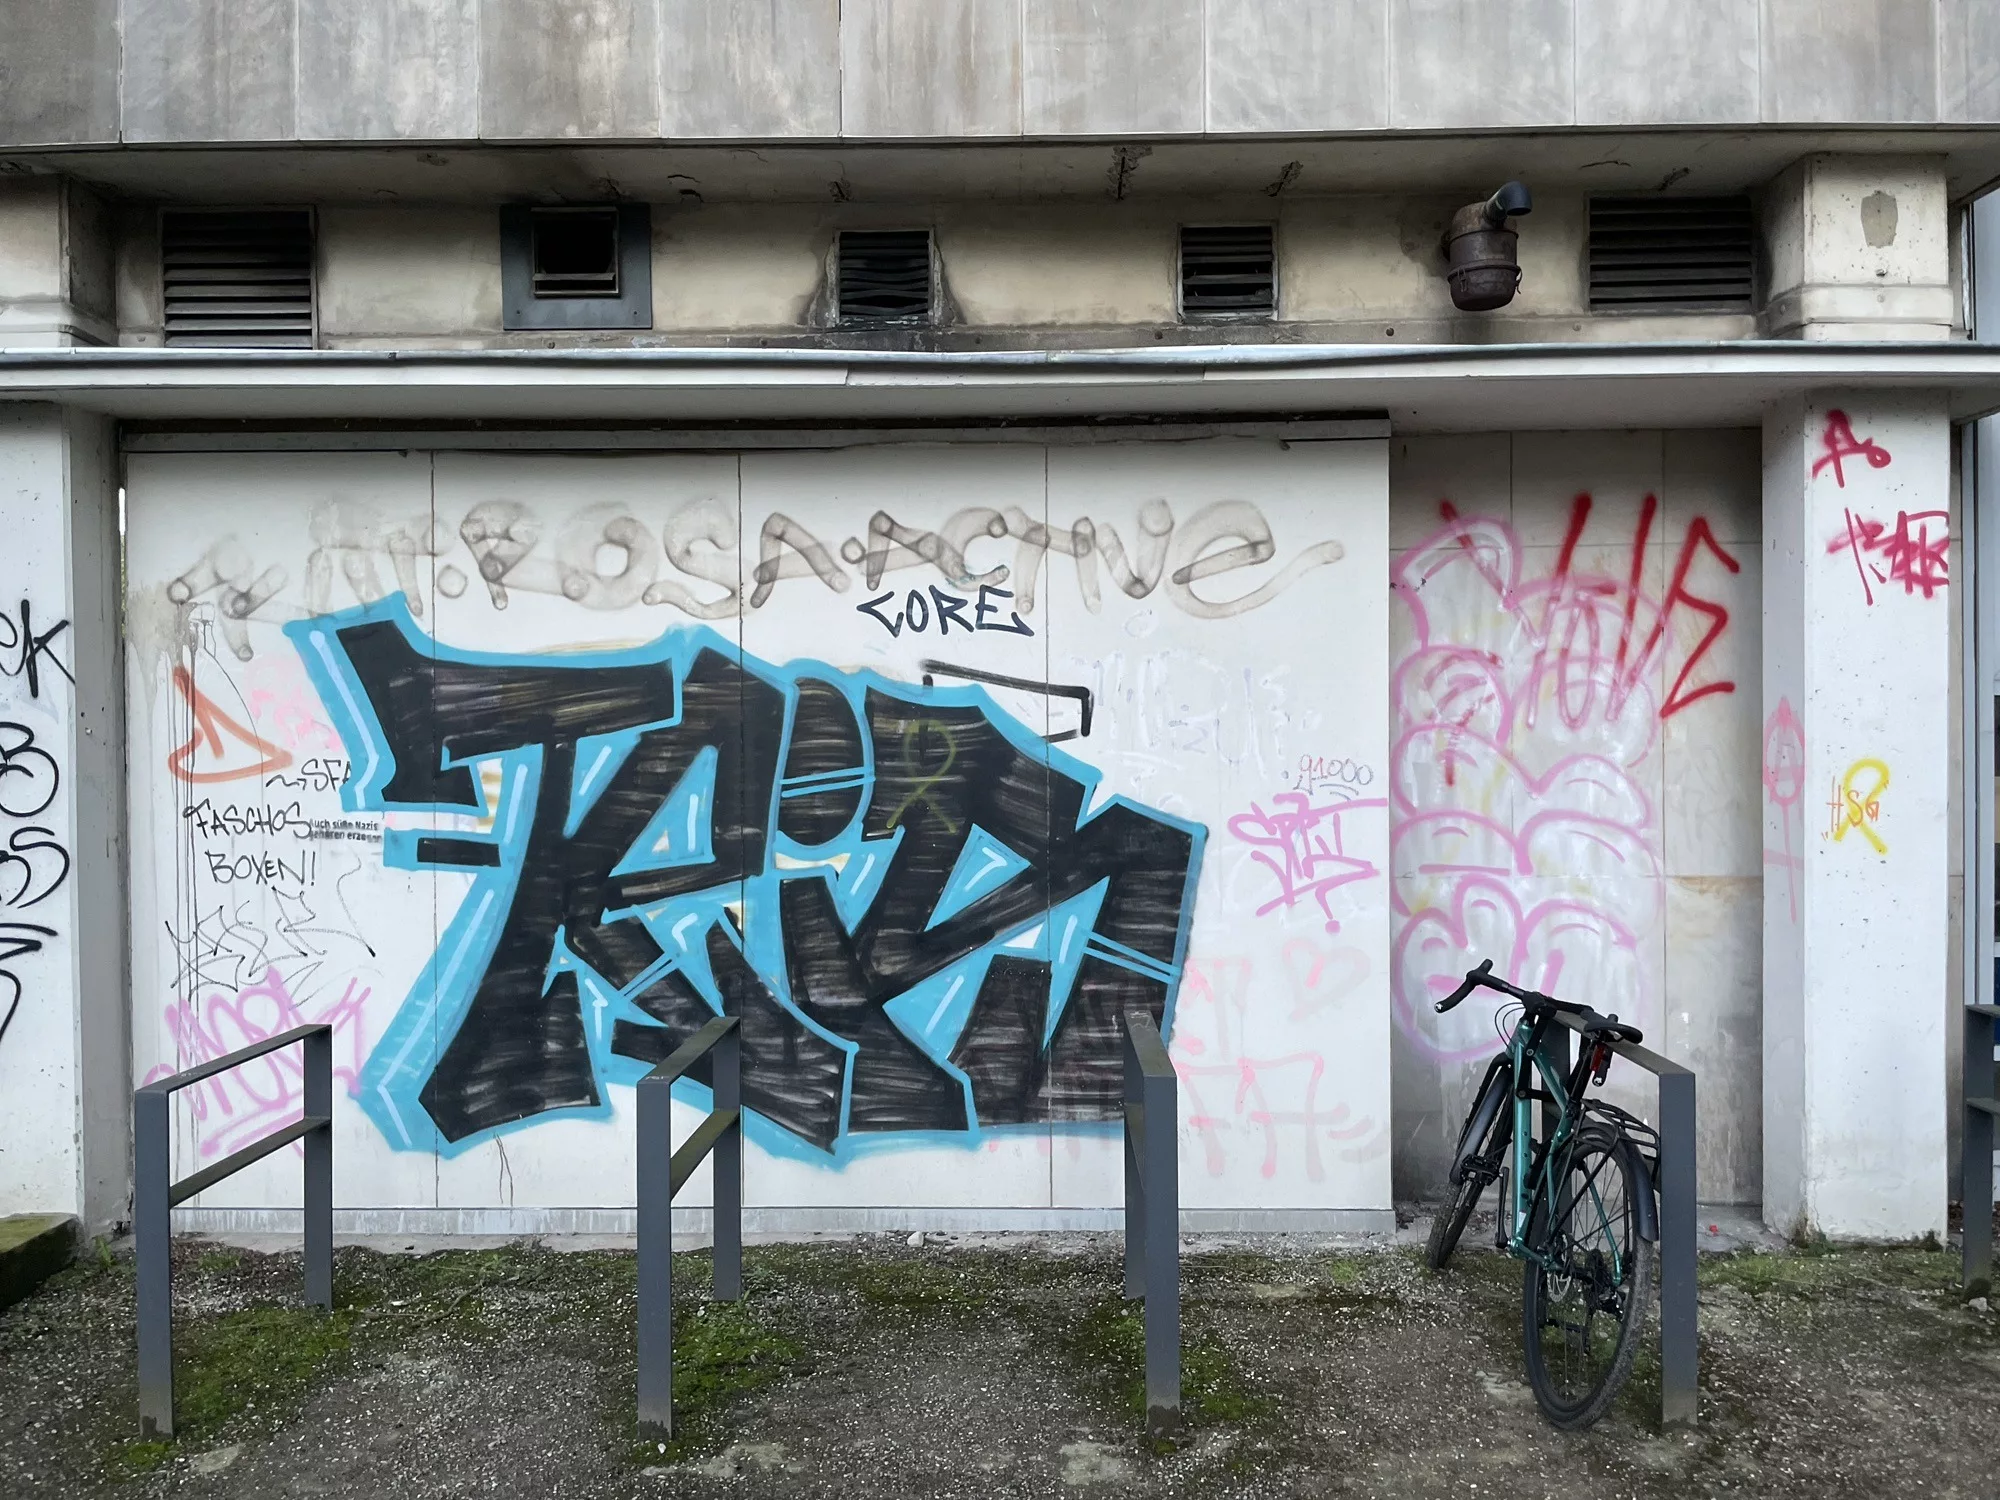 Leibniz Uni Hannover: Fahrradständer mit einem abgestelltrn Fahrrad vor heller Gebäudewand mit großem schwarz-blauen Tag umgeben von vielen kleinen Tags 